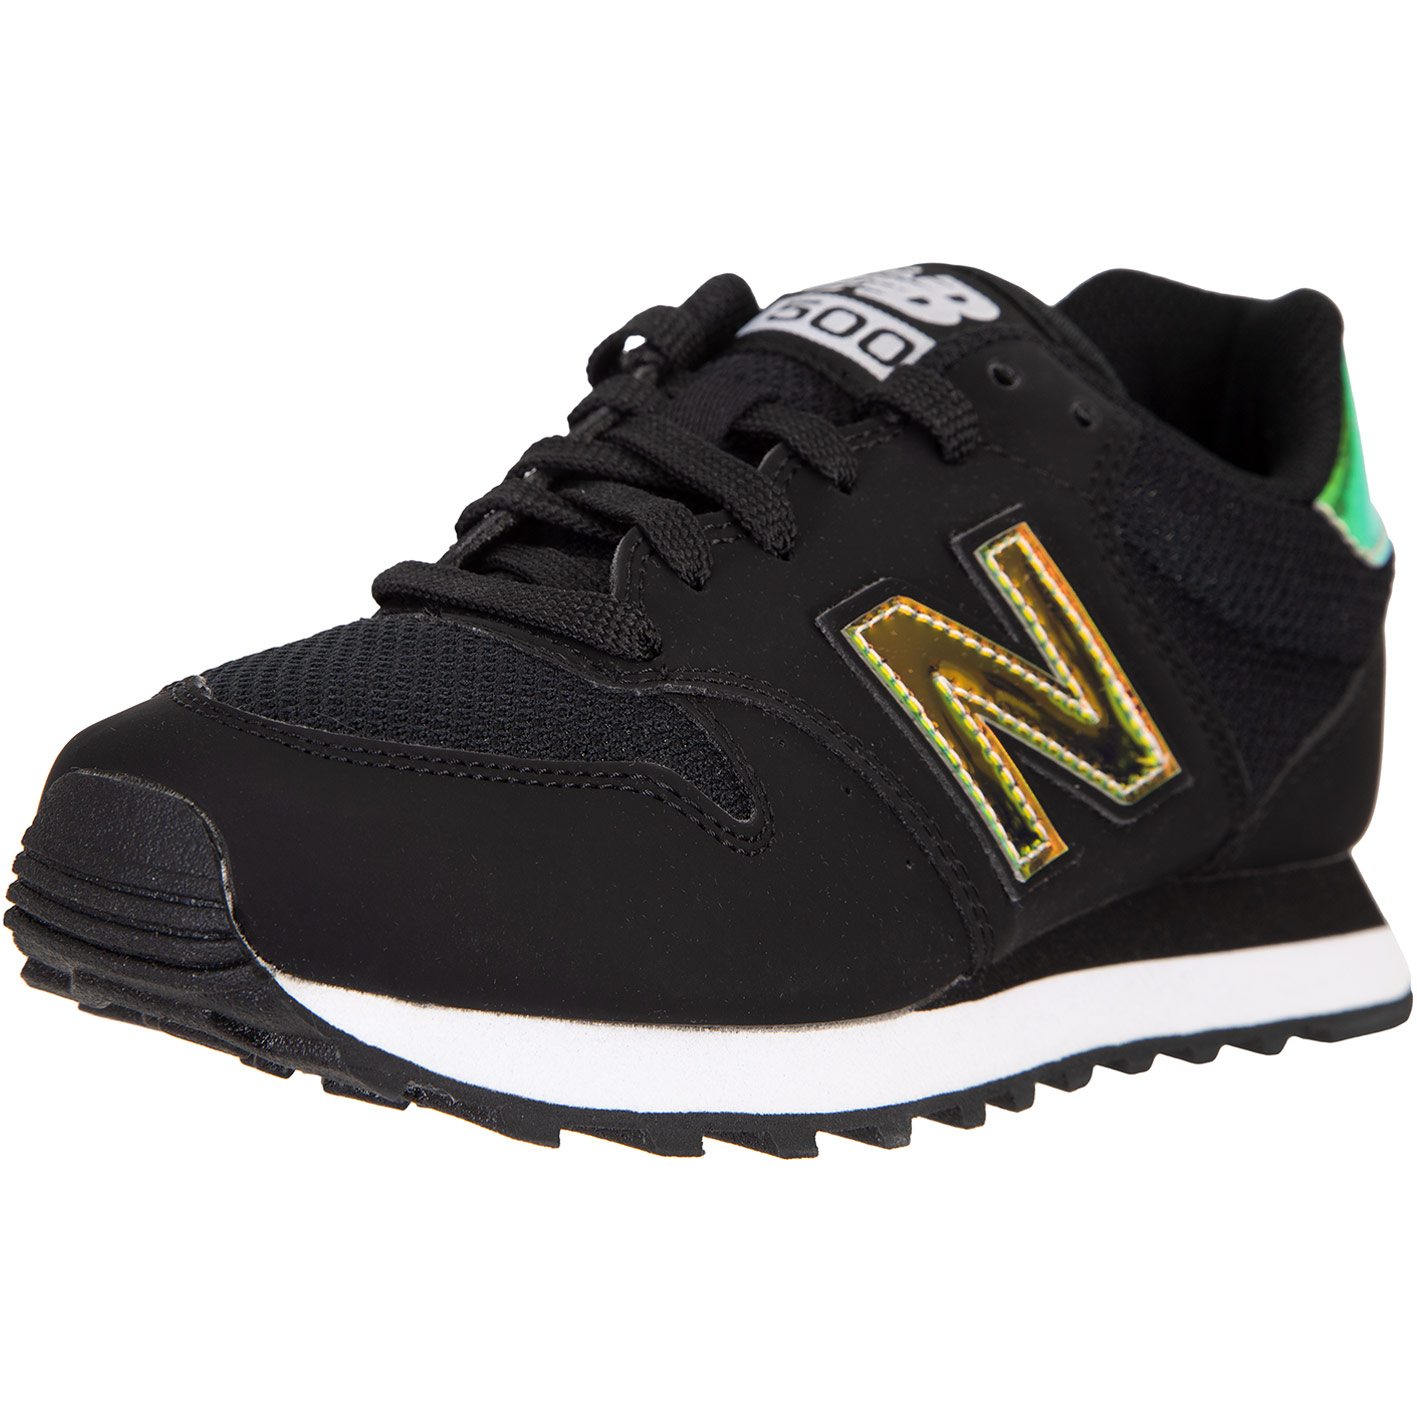 ☆ New Balance NB 500 Damen Sneaker Schuhe schwarz - hier bestellen!